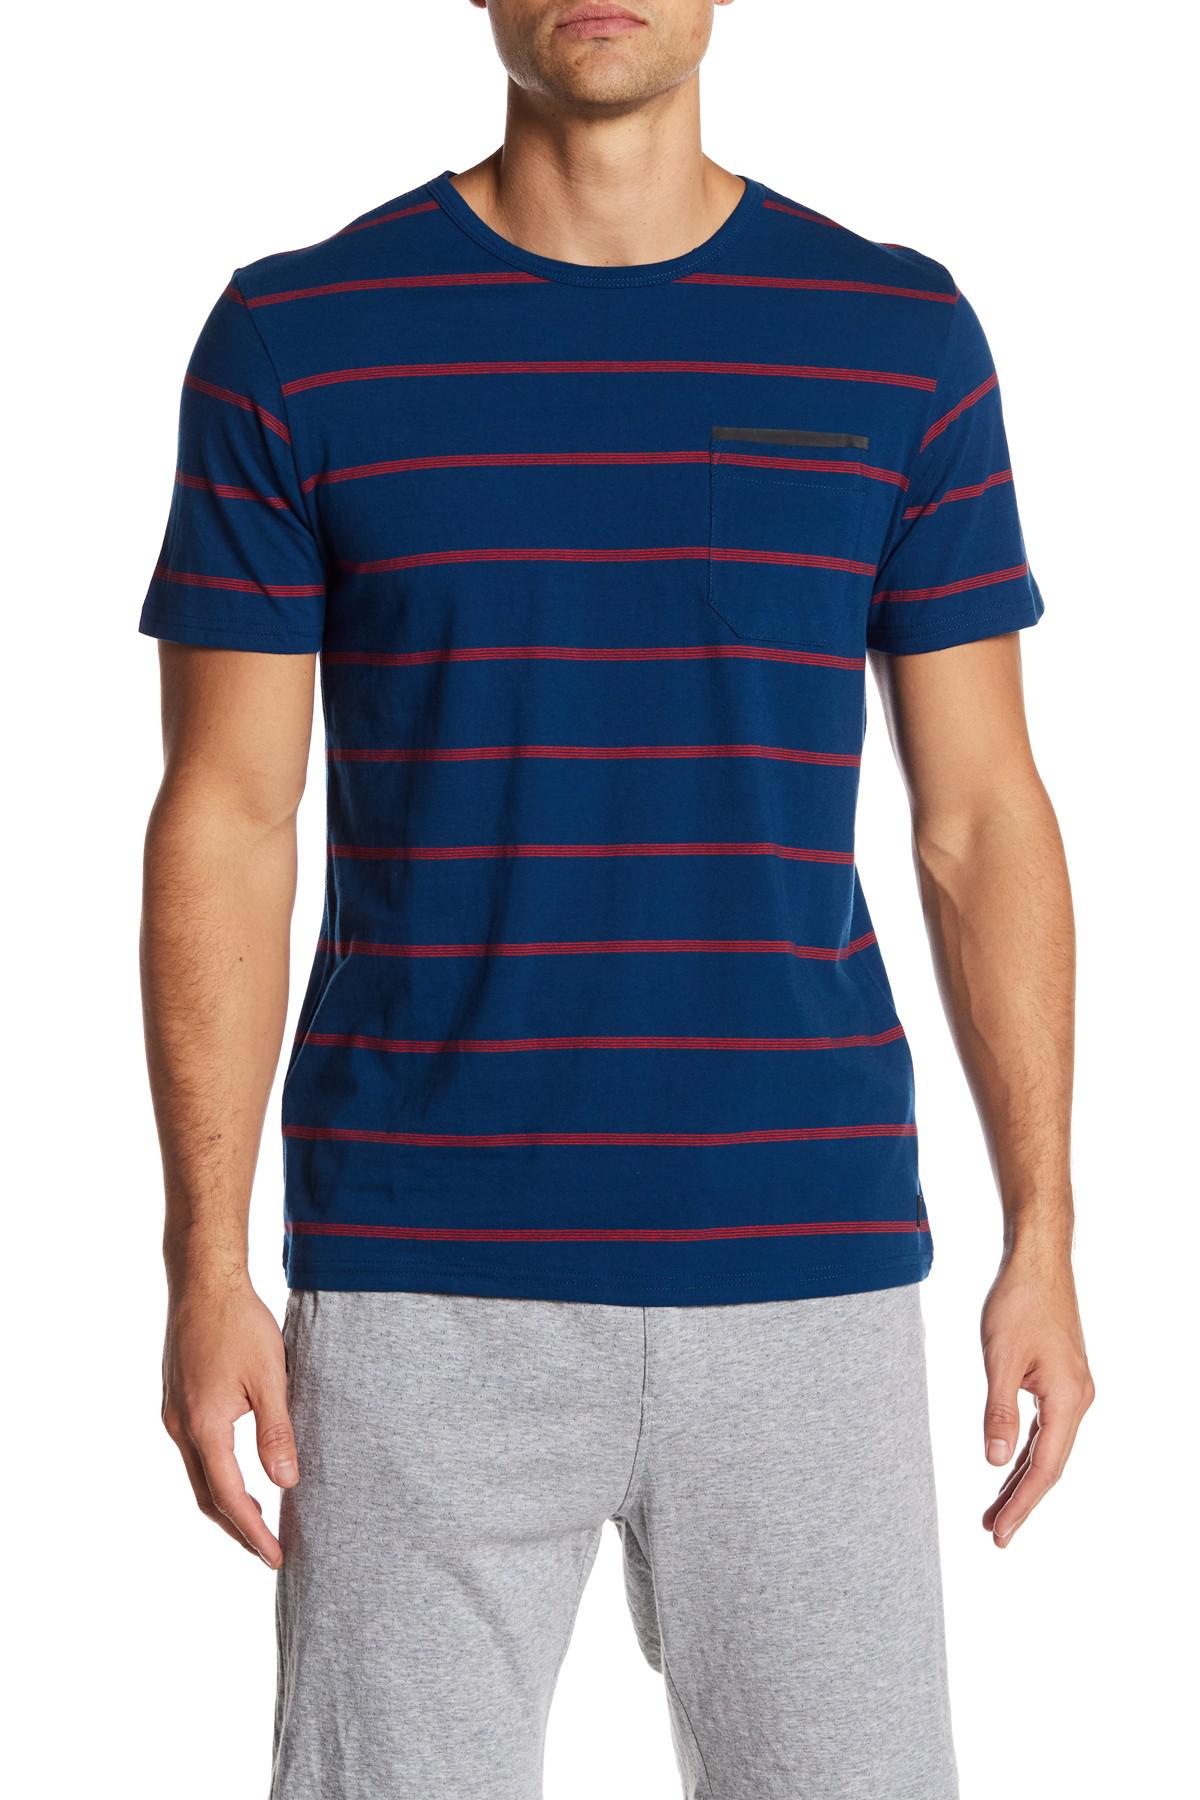 Lyst - Tavik Tracer Colorblock Stripe Shirt in Blue for Men